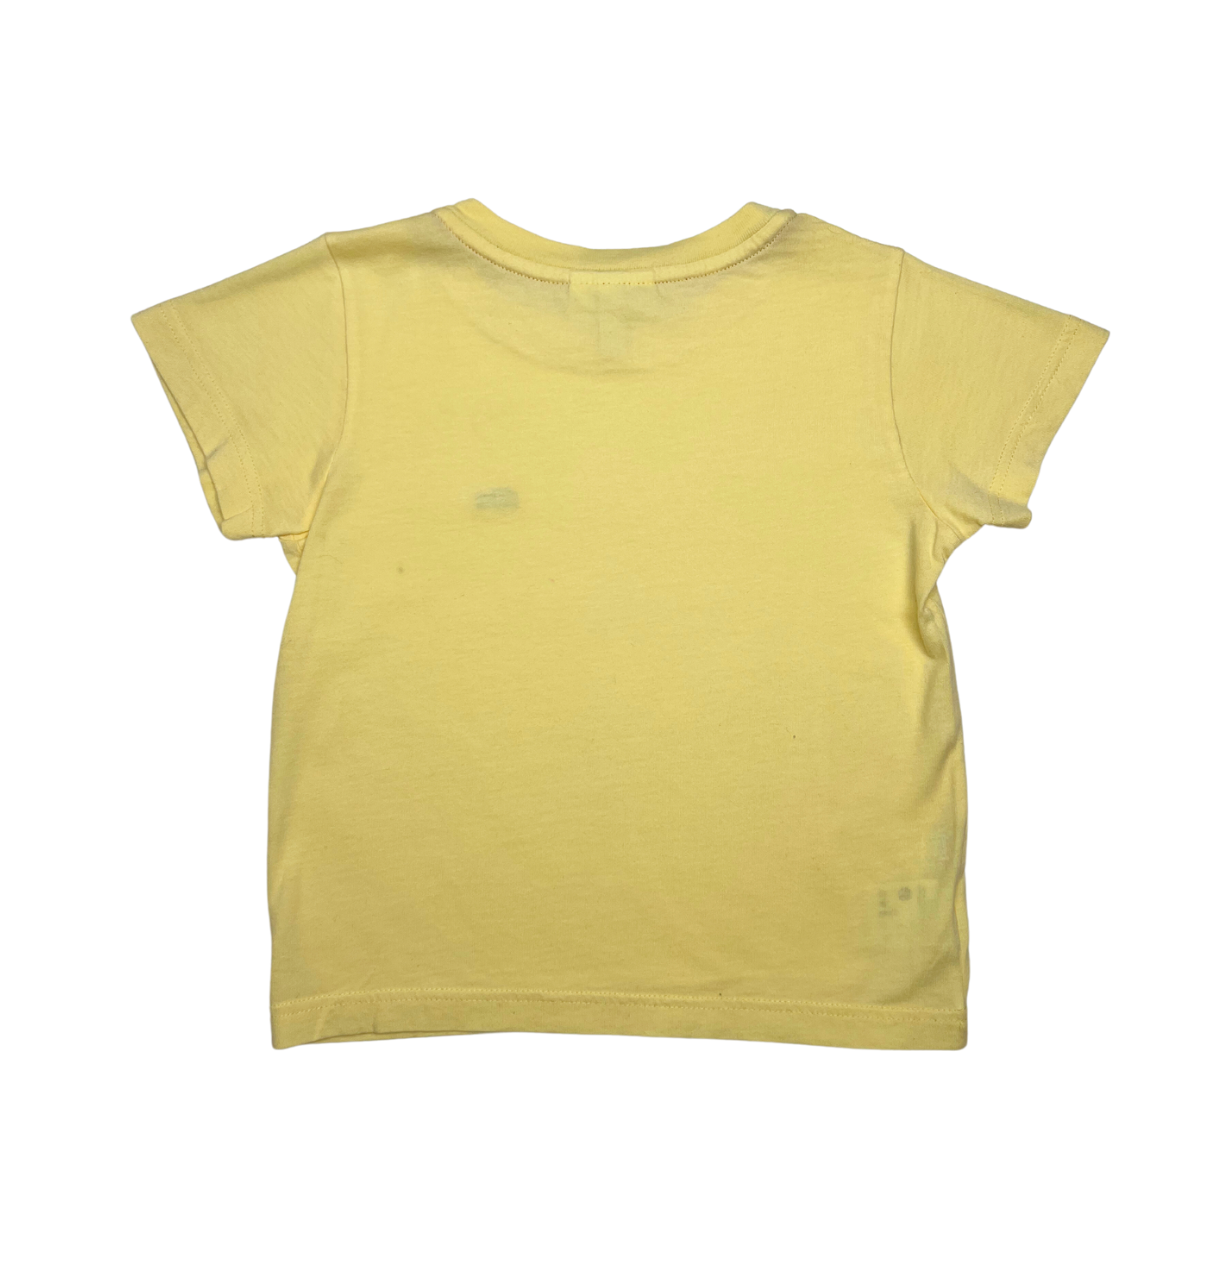 LACOSTE - T-shirt jaune - 3 ans